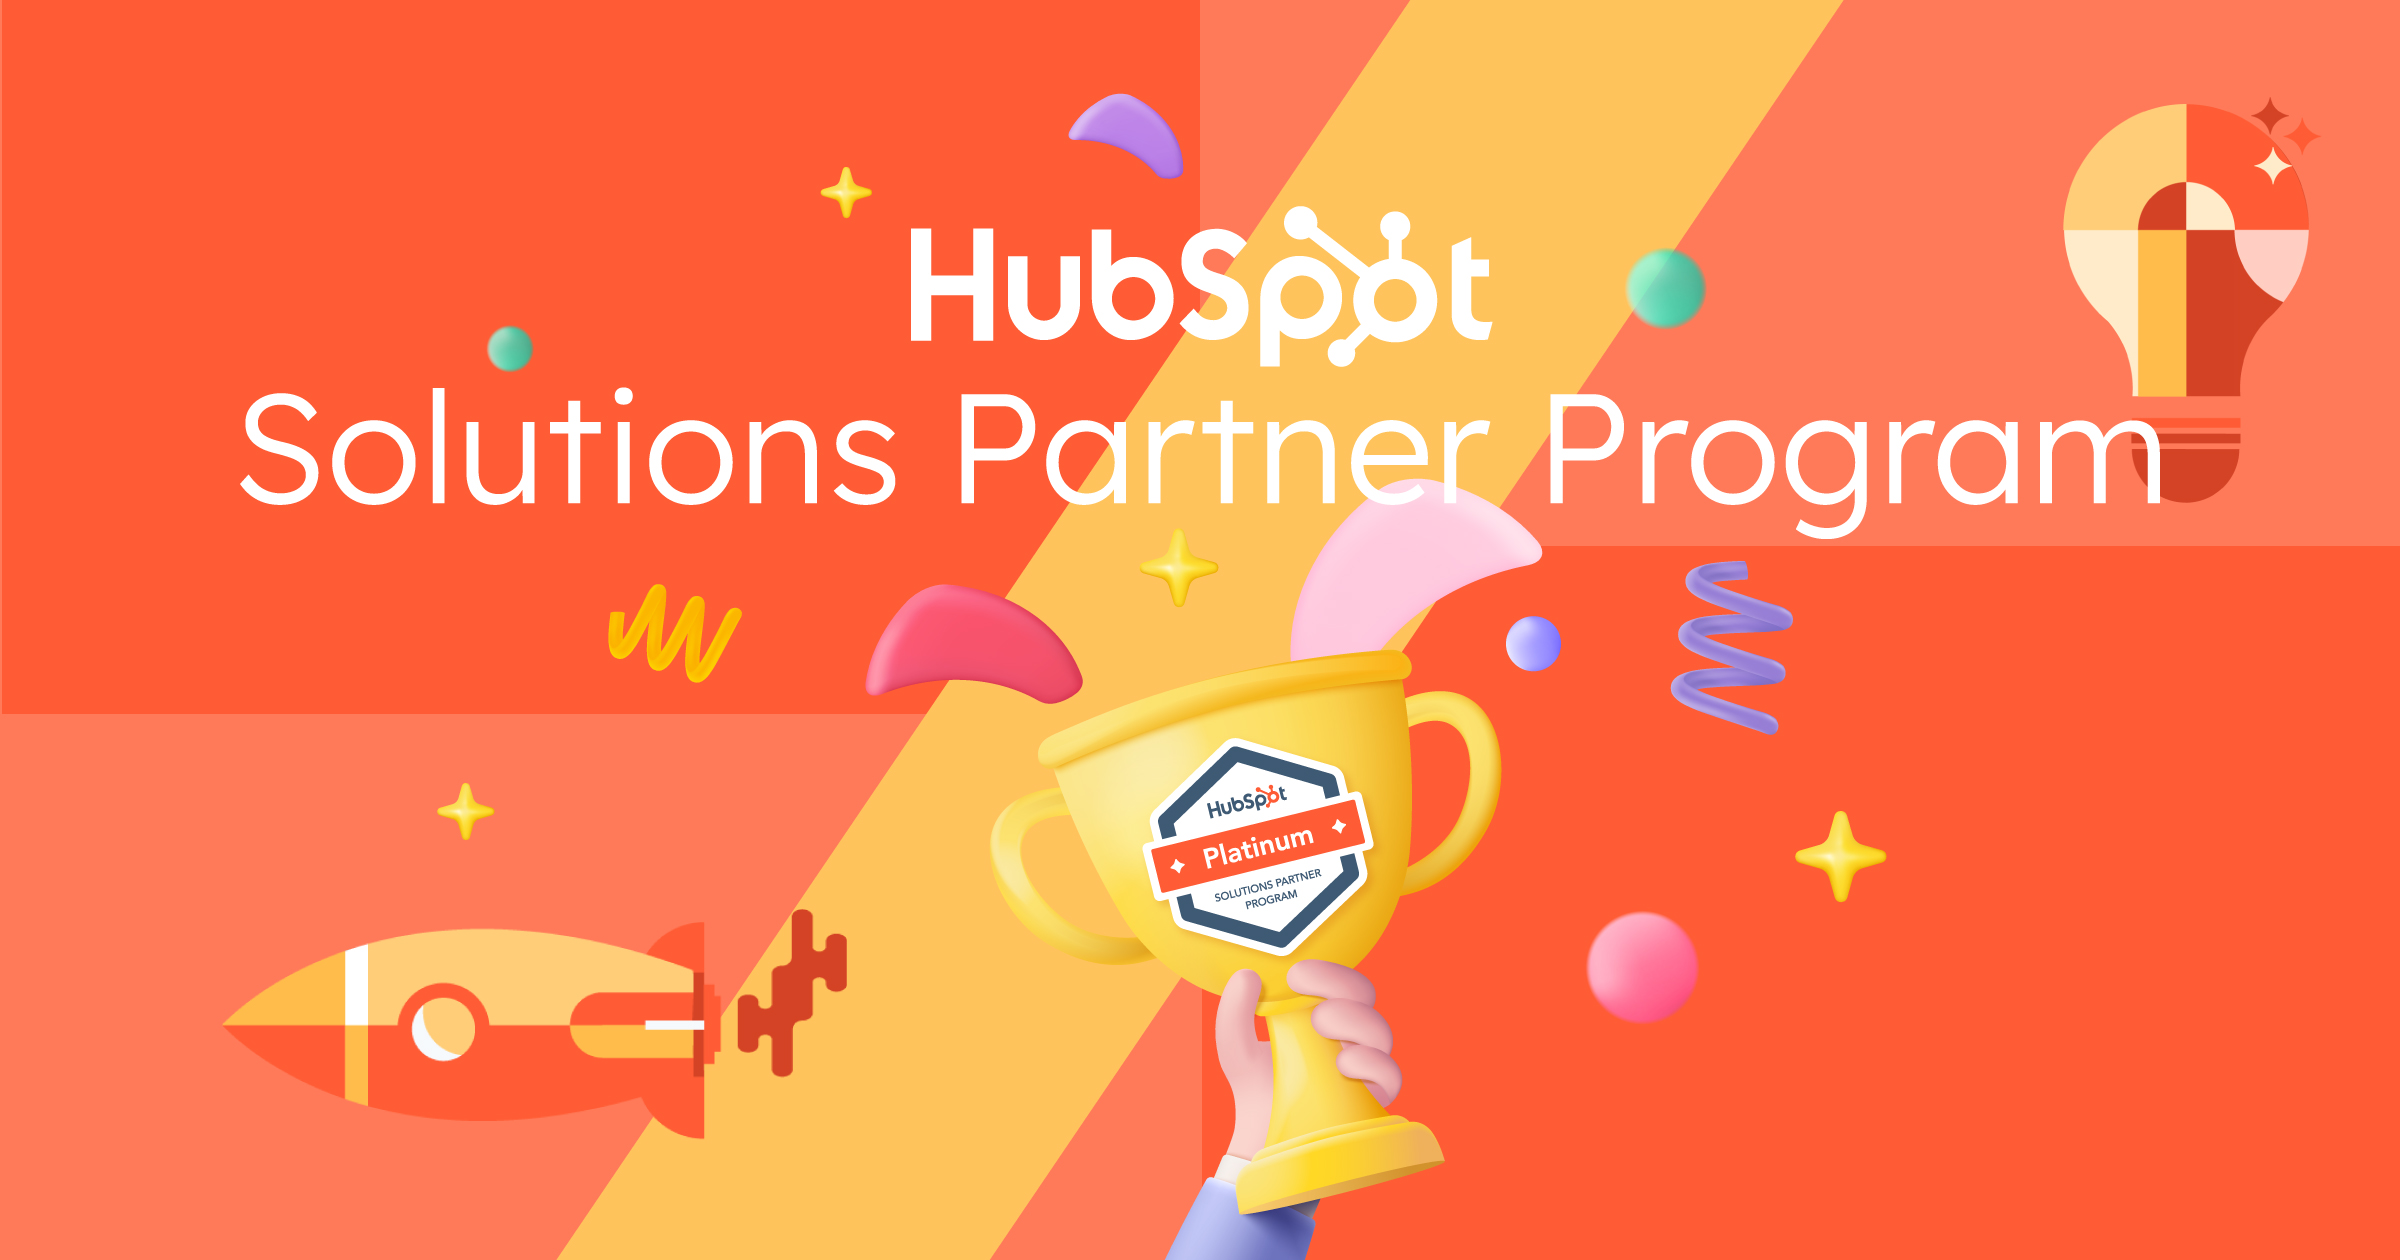 ¡Ahora somos Platinum en Solutions Partner Program con HubSpot!